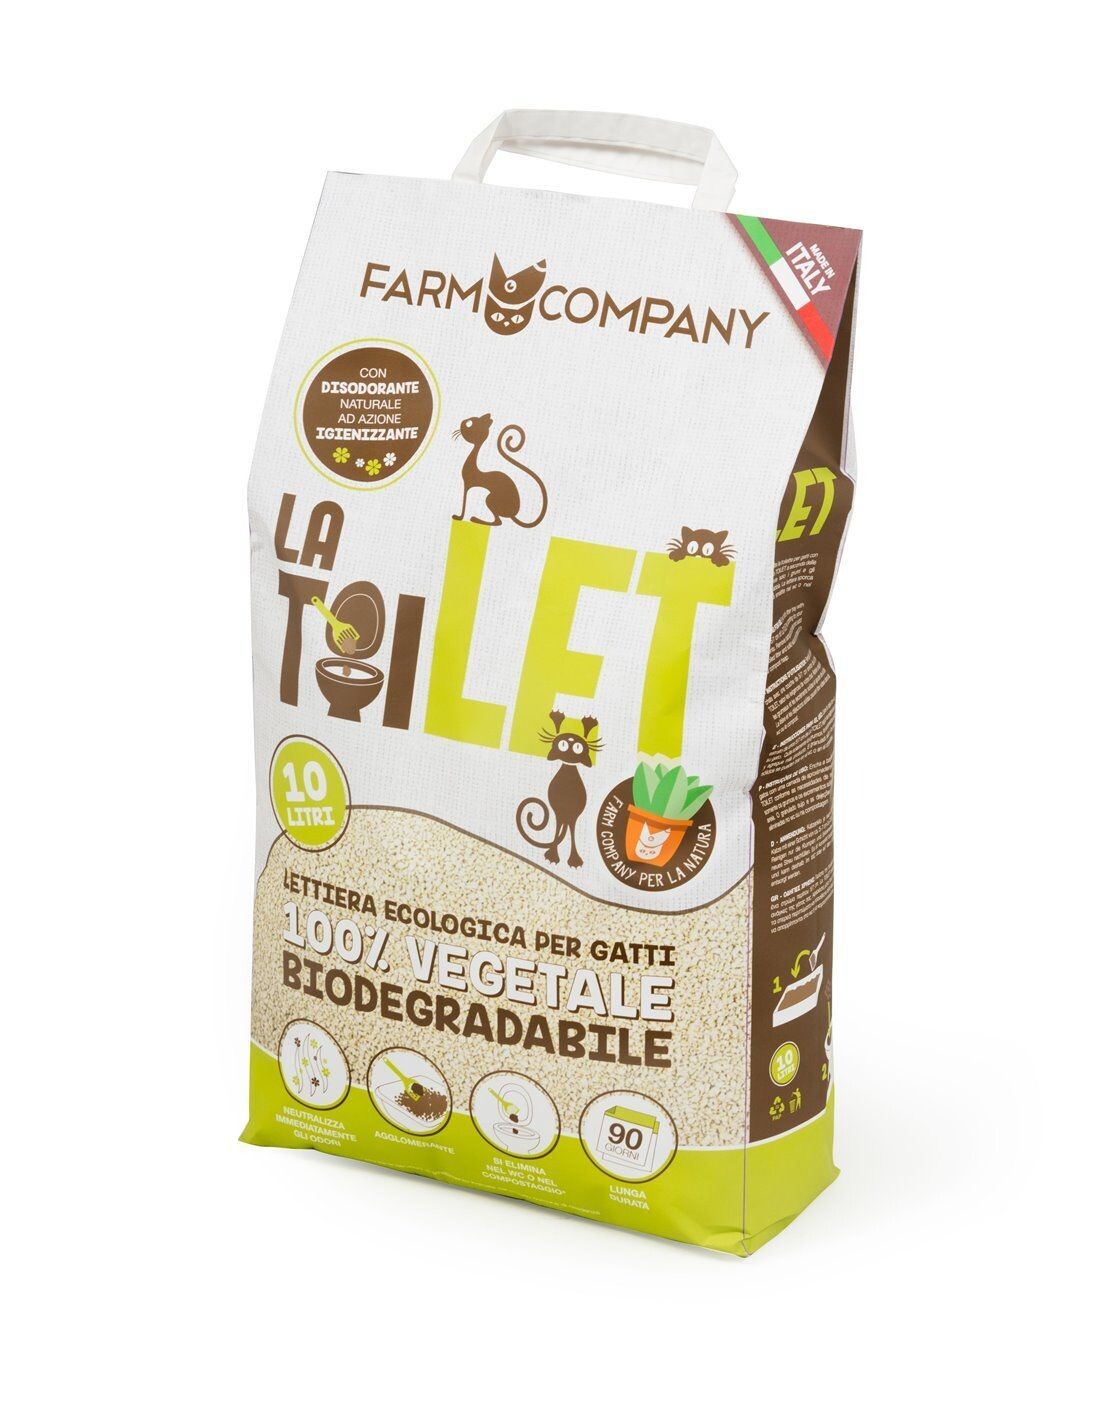 Farm Company La Toilet Lettiera Vegetale Biodegradabile per Gatti Roditori  10 lt